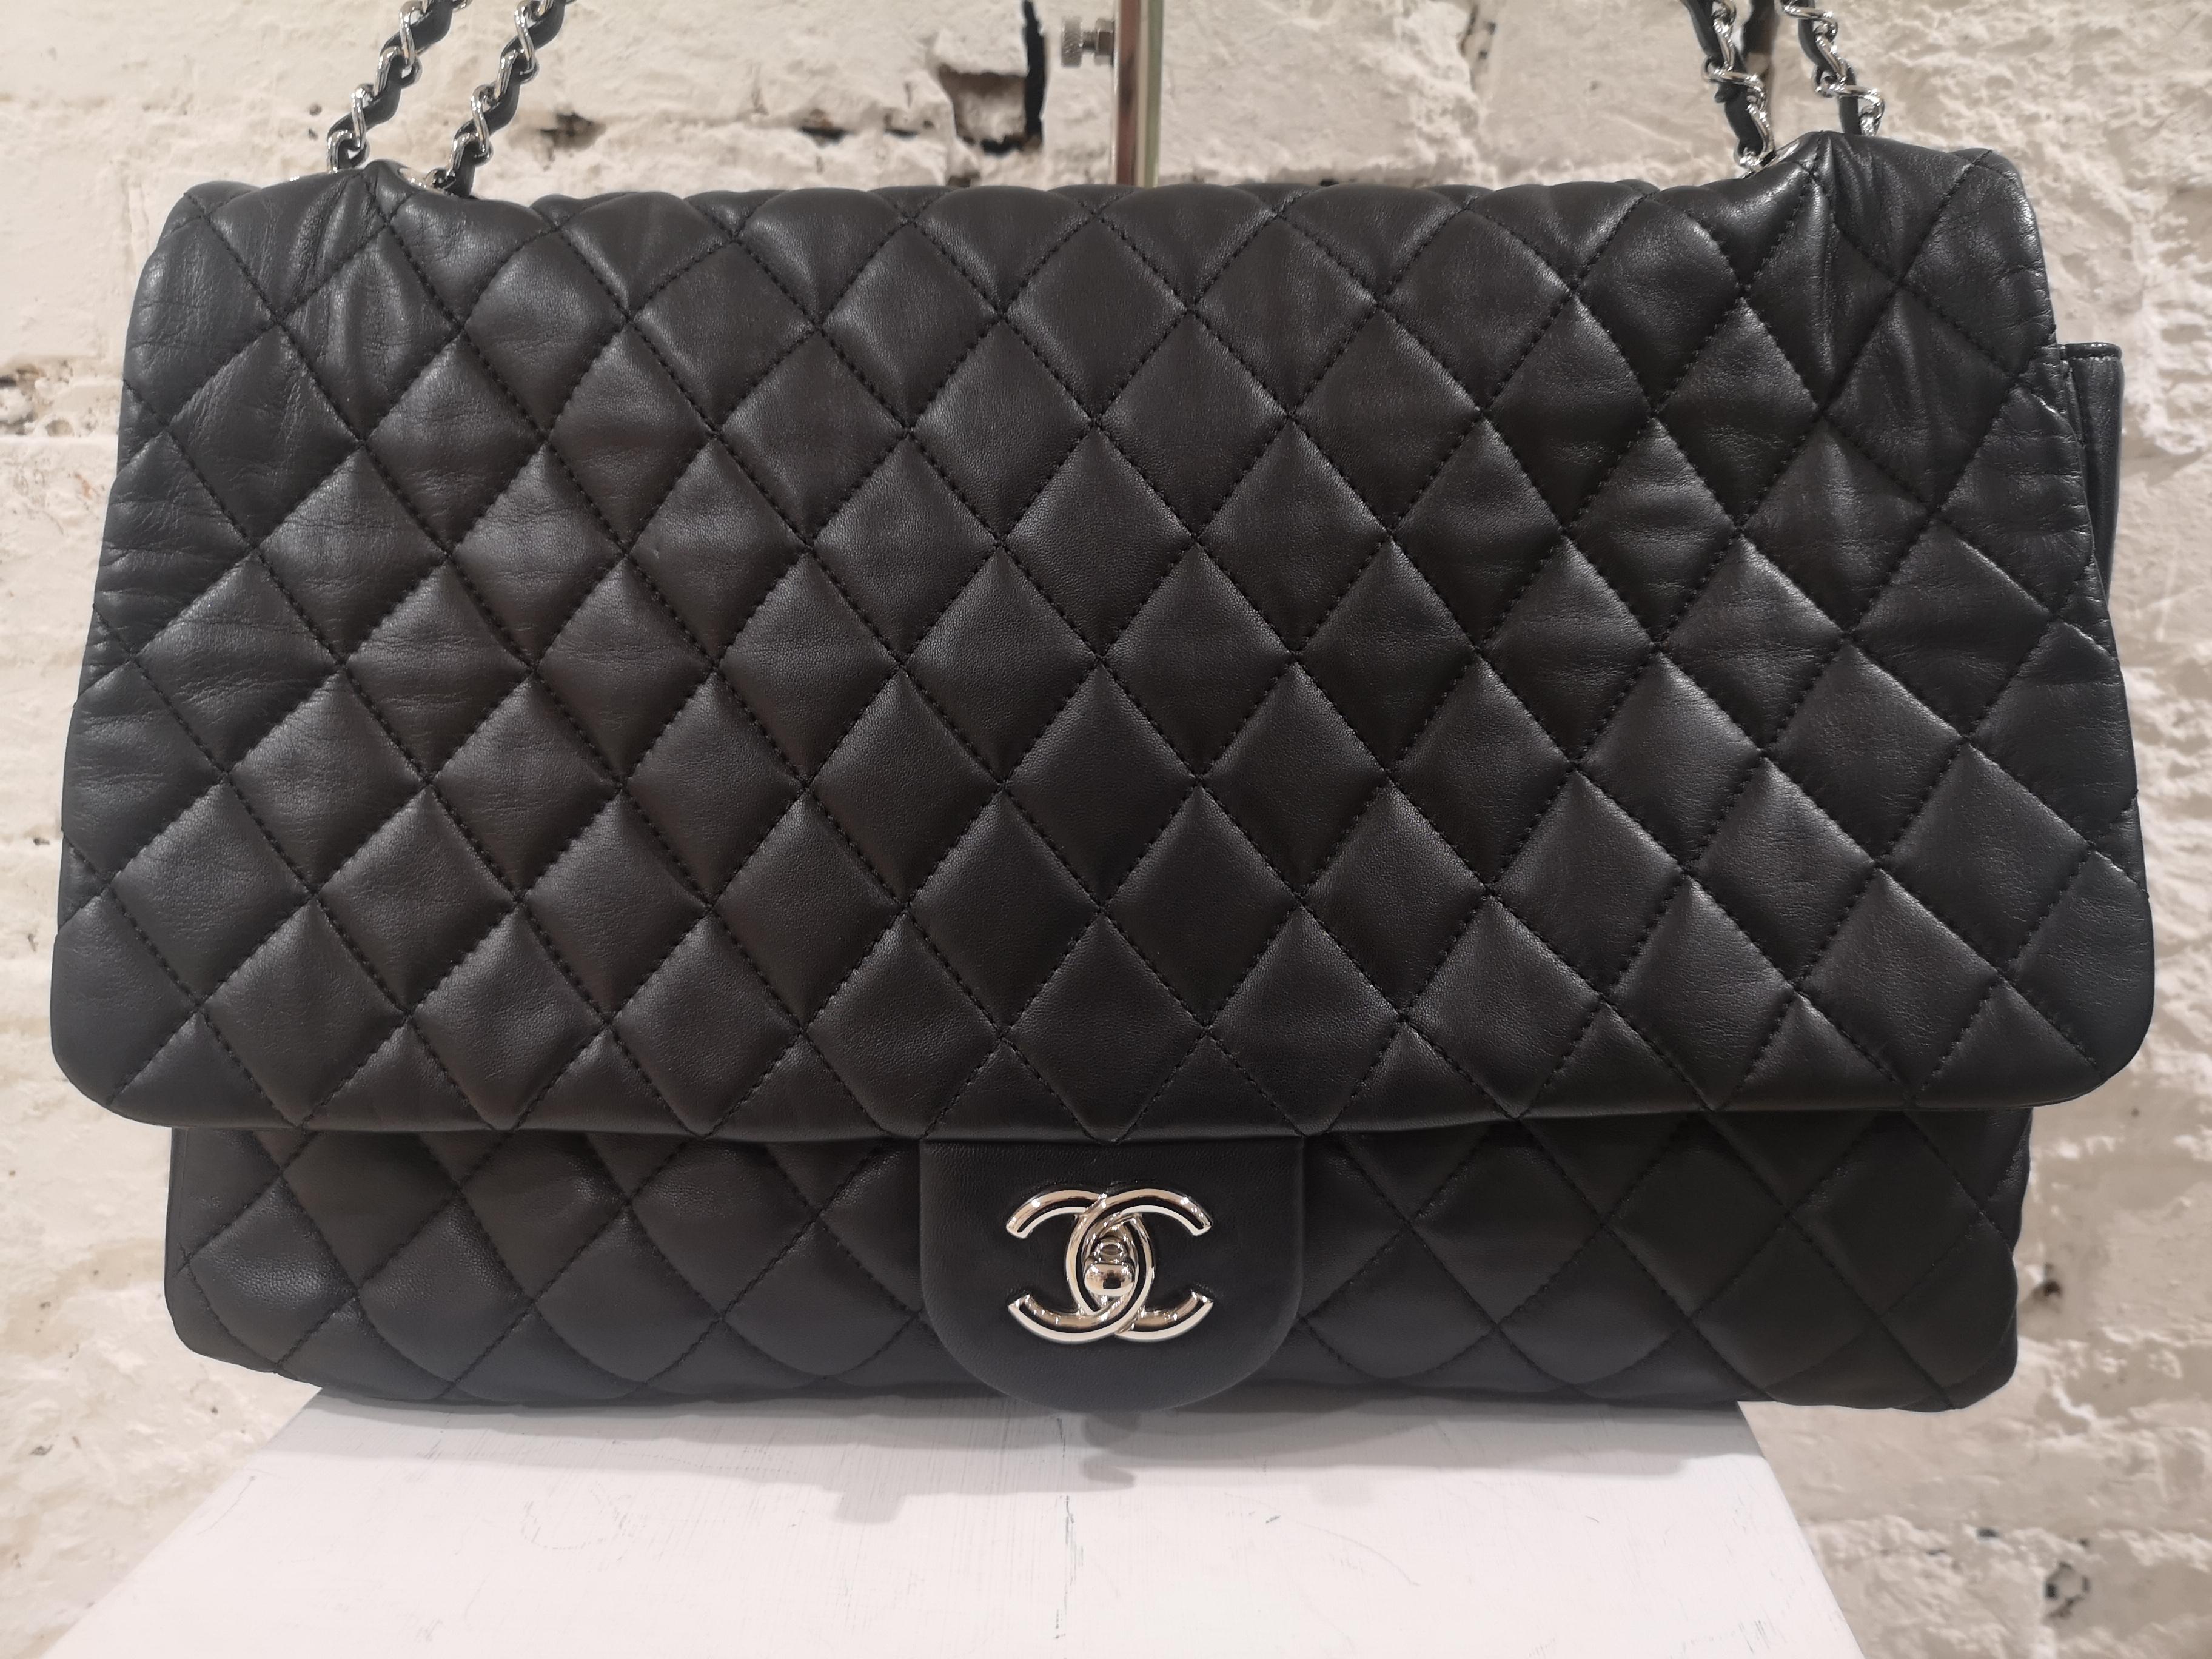 Black Chanel maxi jumbo black leather shoulder bag